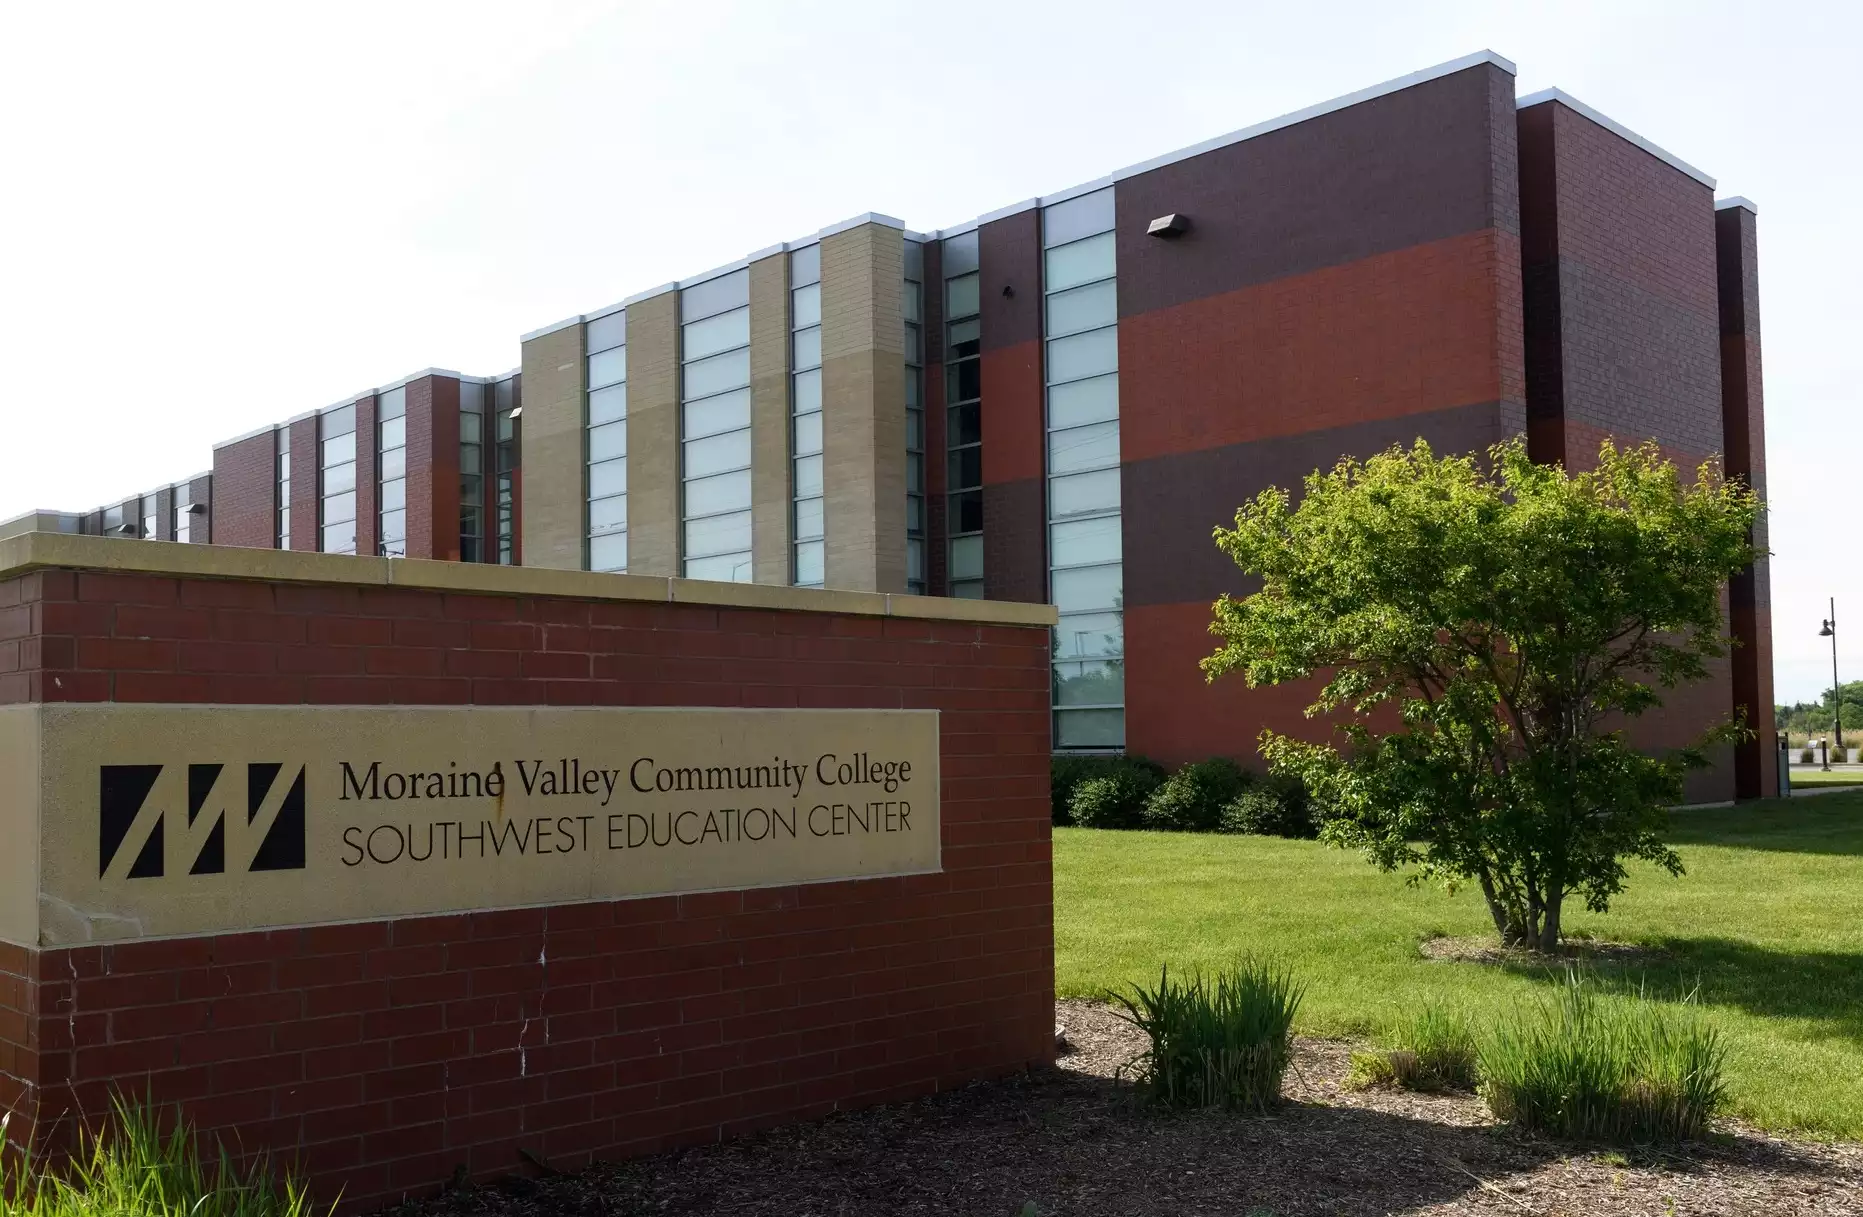 كلية مورين فالي المجتمعية Moraine Valley Community College